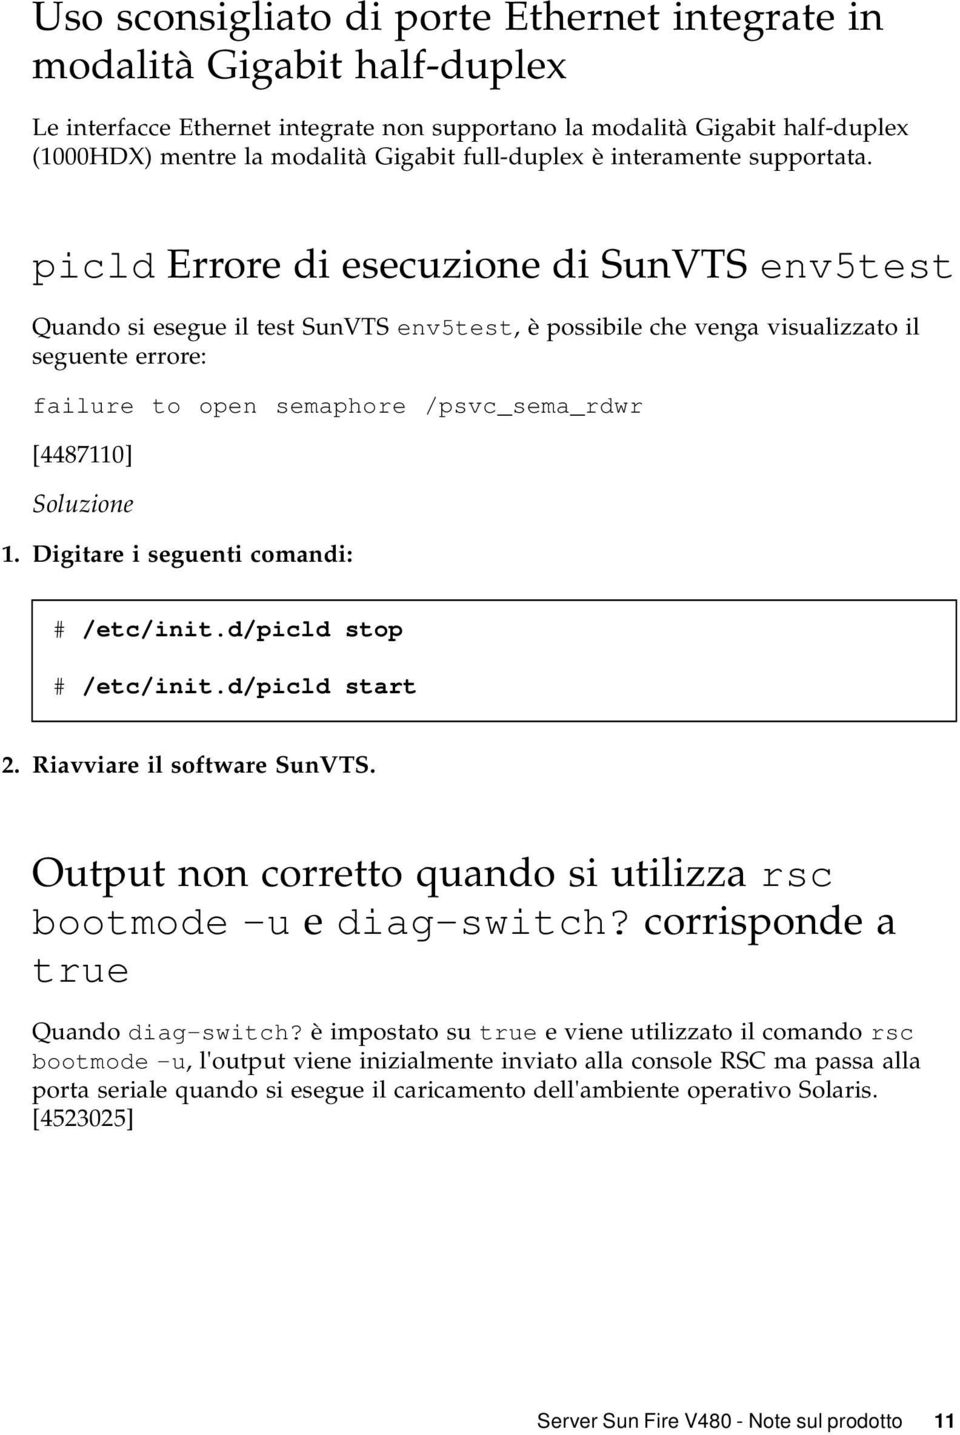 picld Errore di esecuzione di SunVTS env5test Quando si esegue il test SunVTS env5test, è possibile che venga visualizzato il seguente errore: failure to open semaphore /psvc_sema_rdwr [4487110]